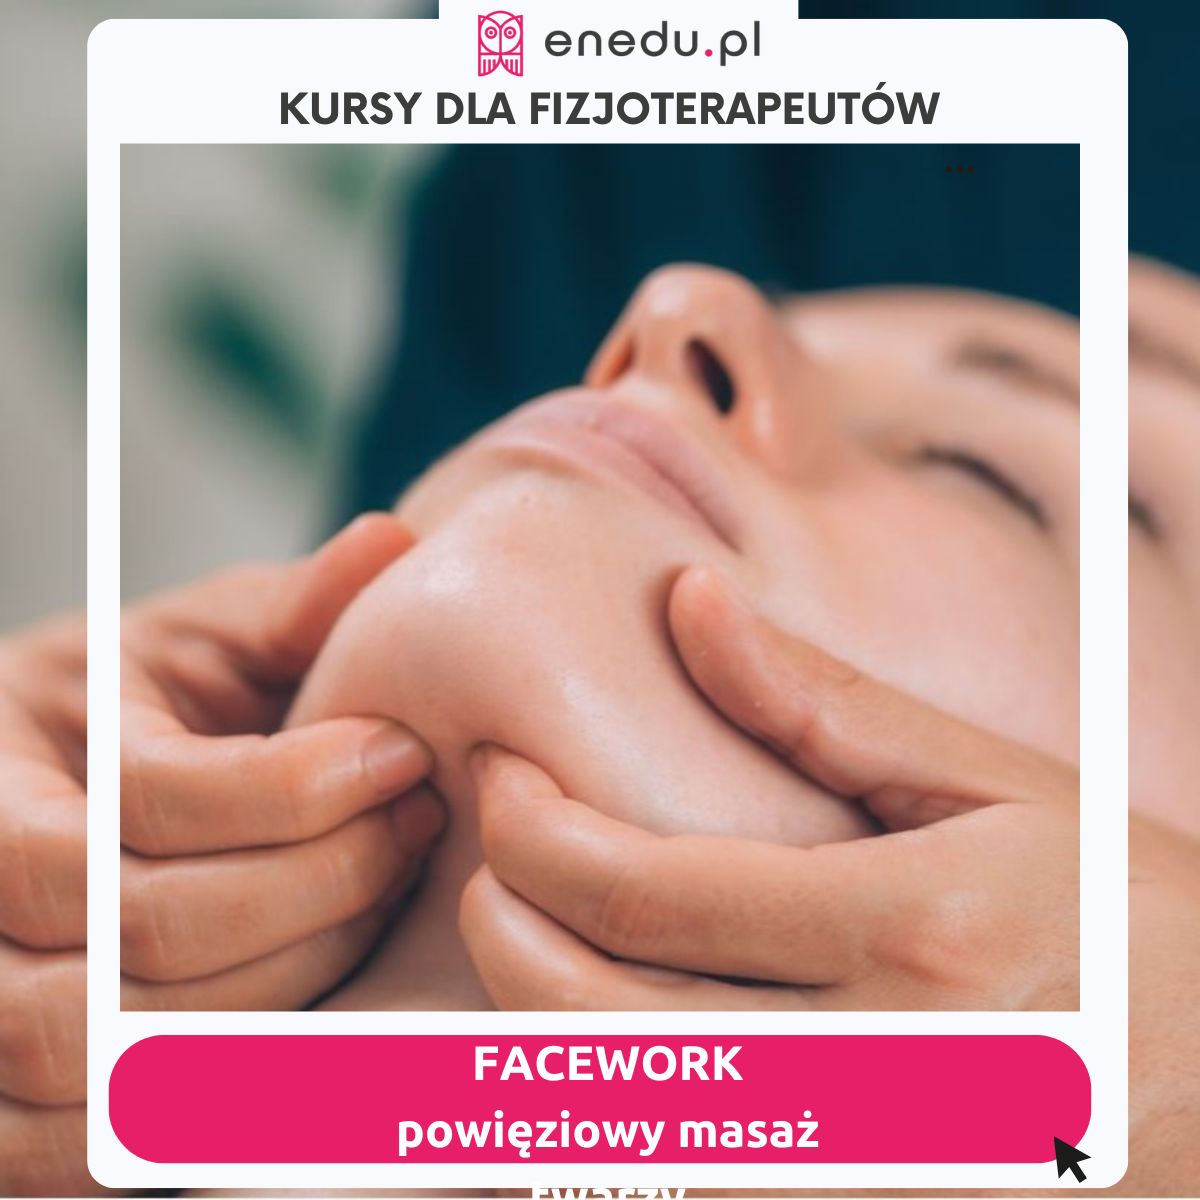 facework - powięziowy masaż twarzy